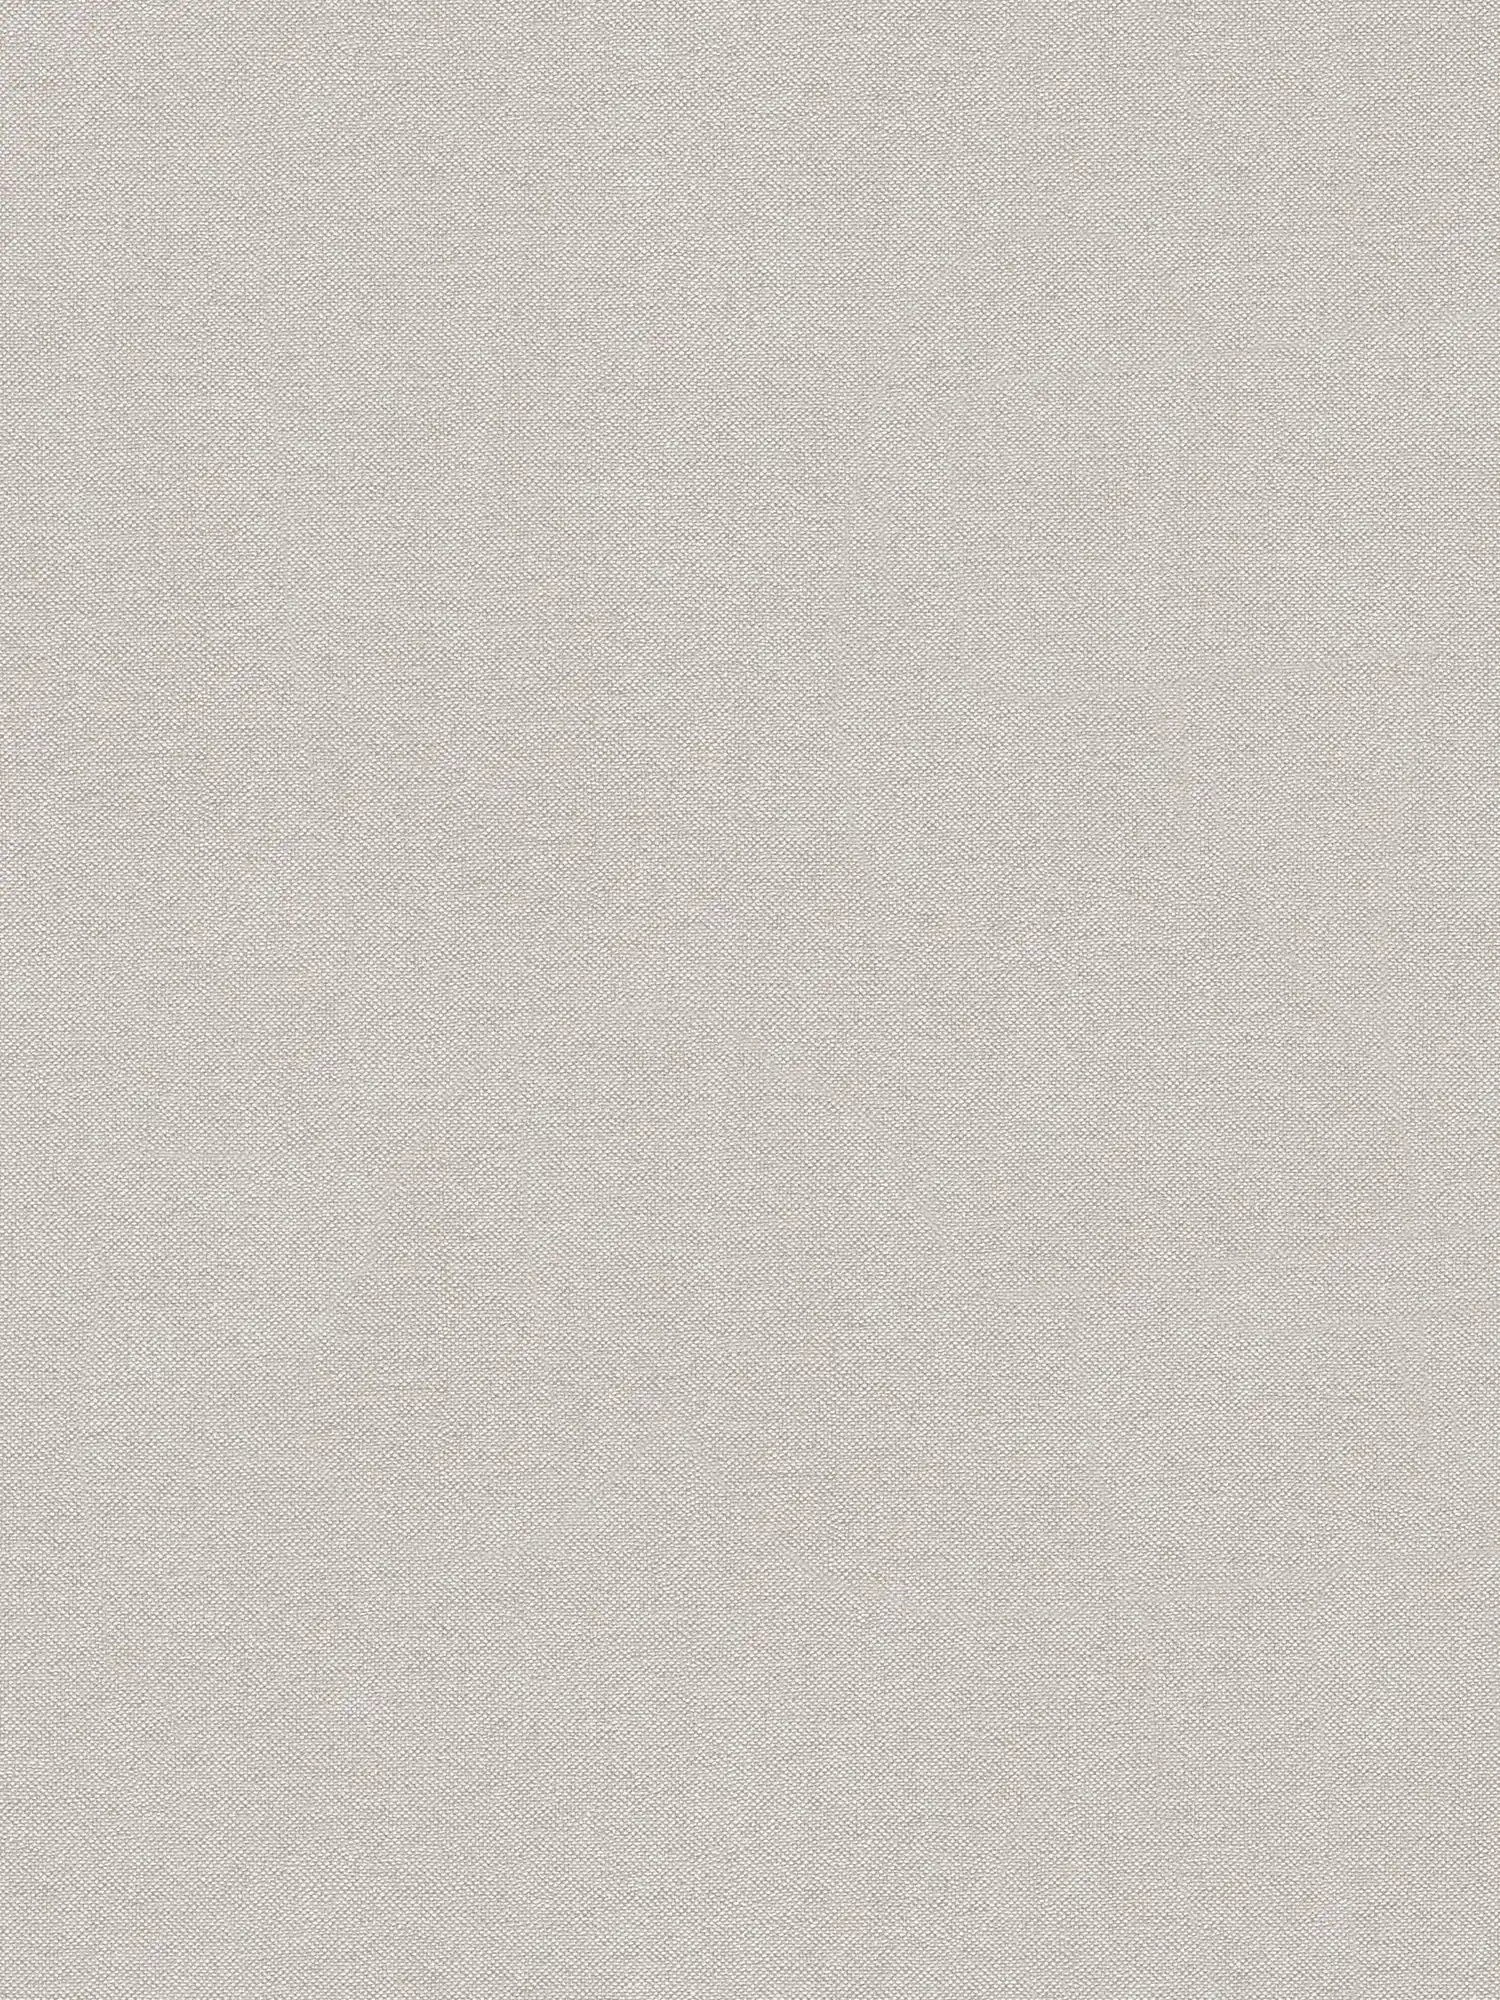 Papier peint uni avec structure textile au design élégant - beige, marron
